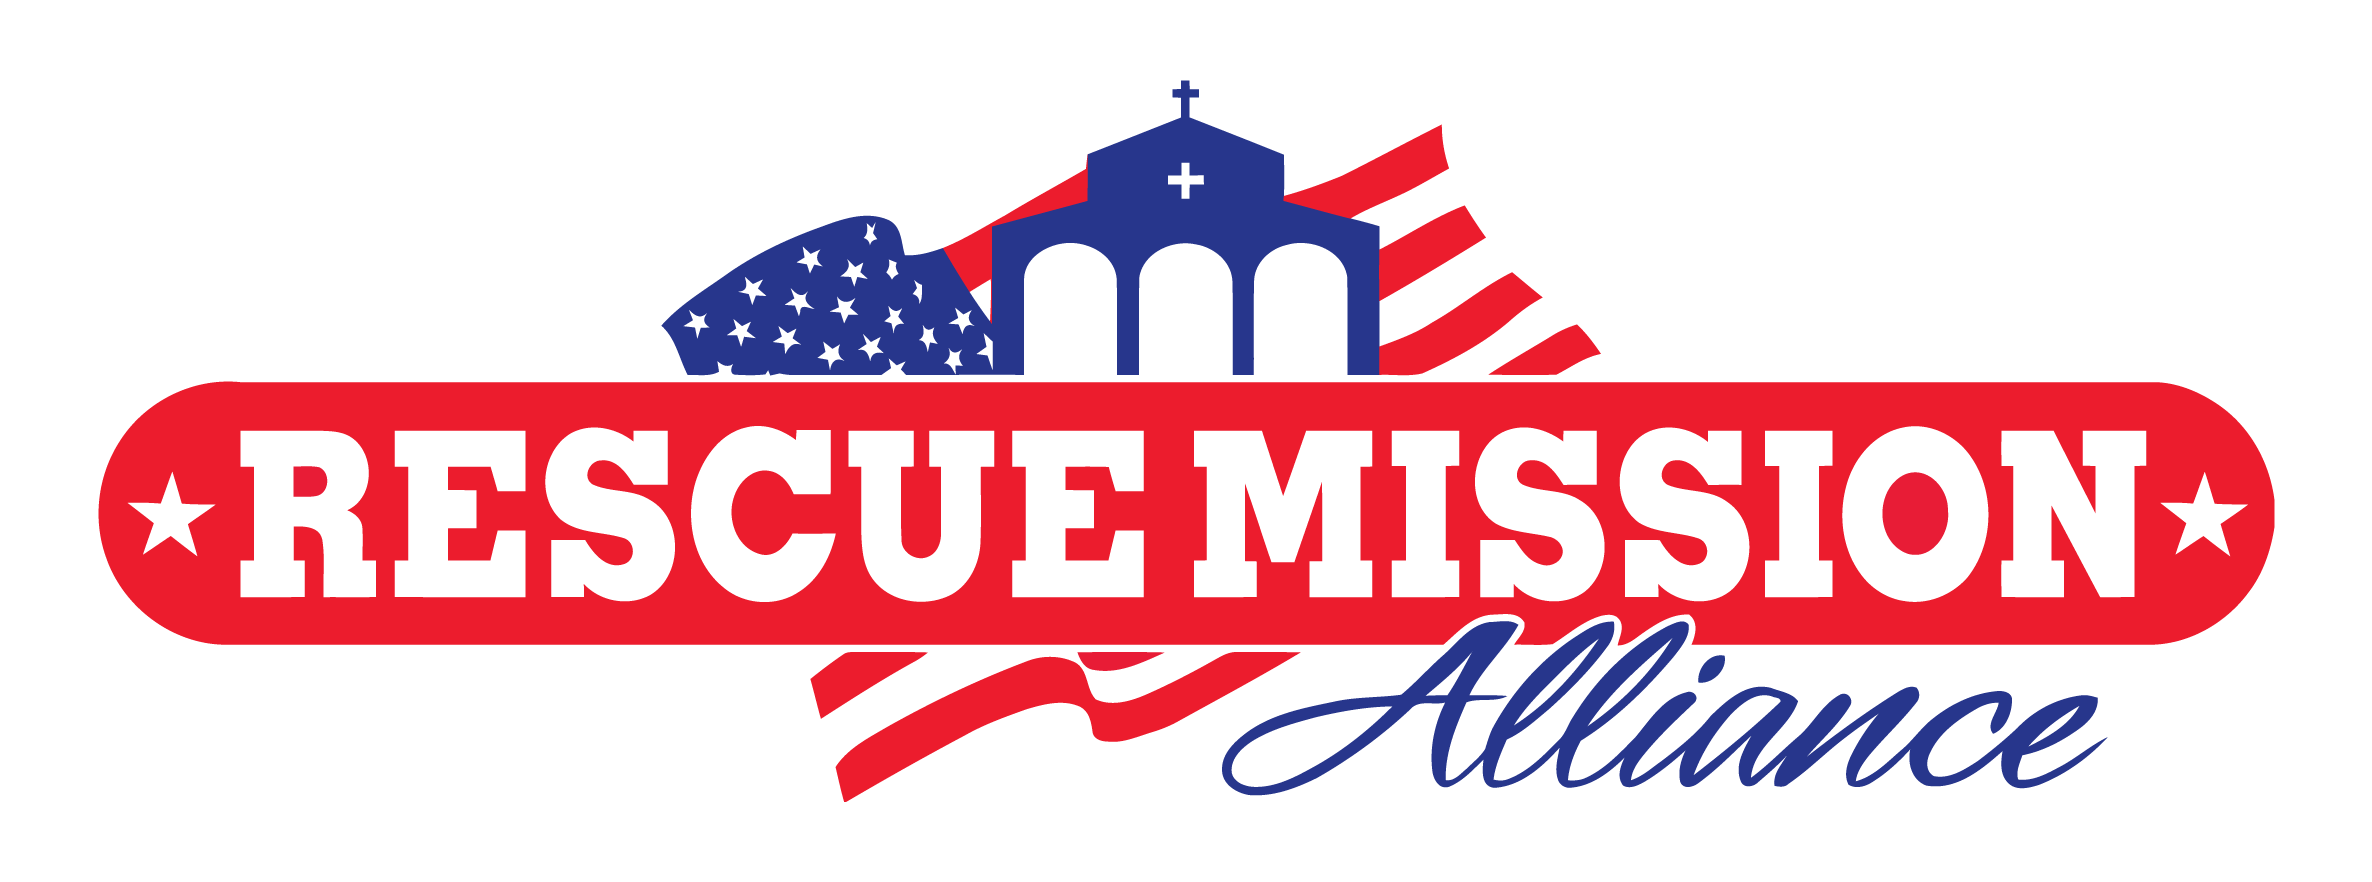 rescue mission logo